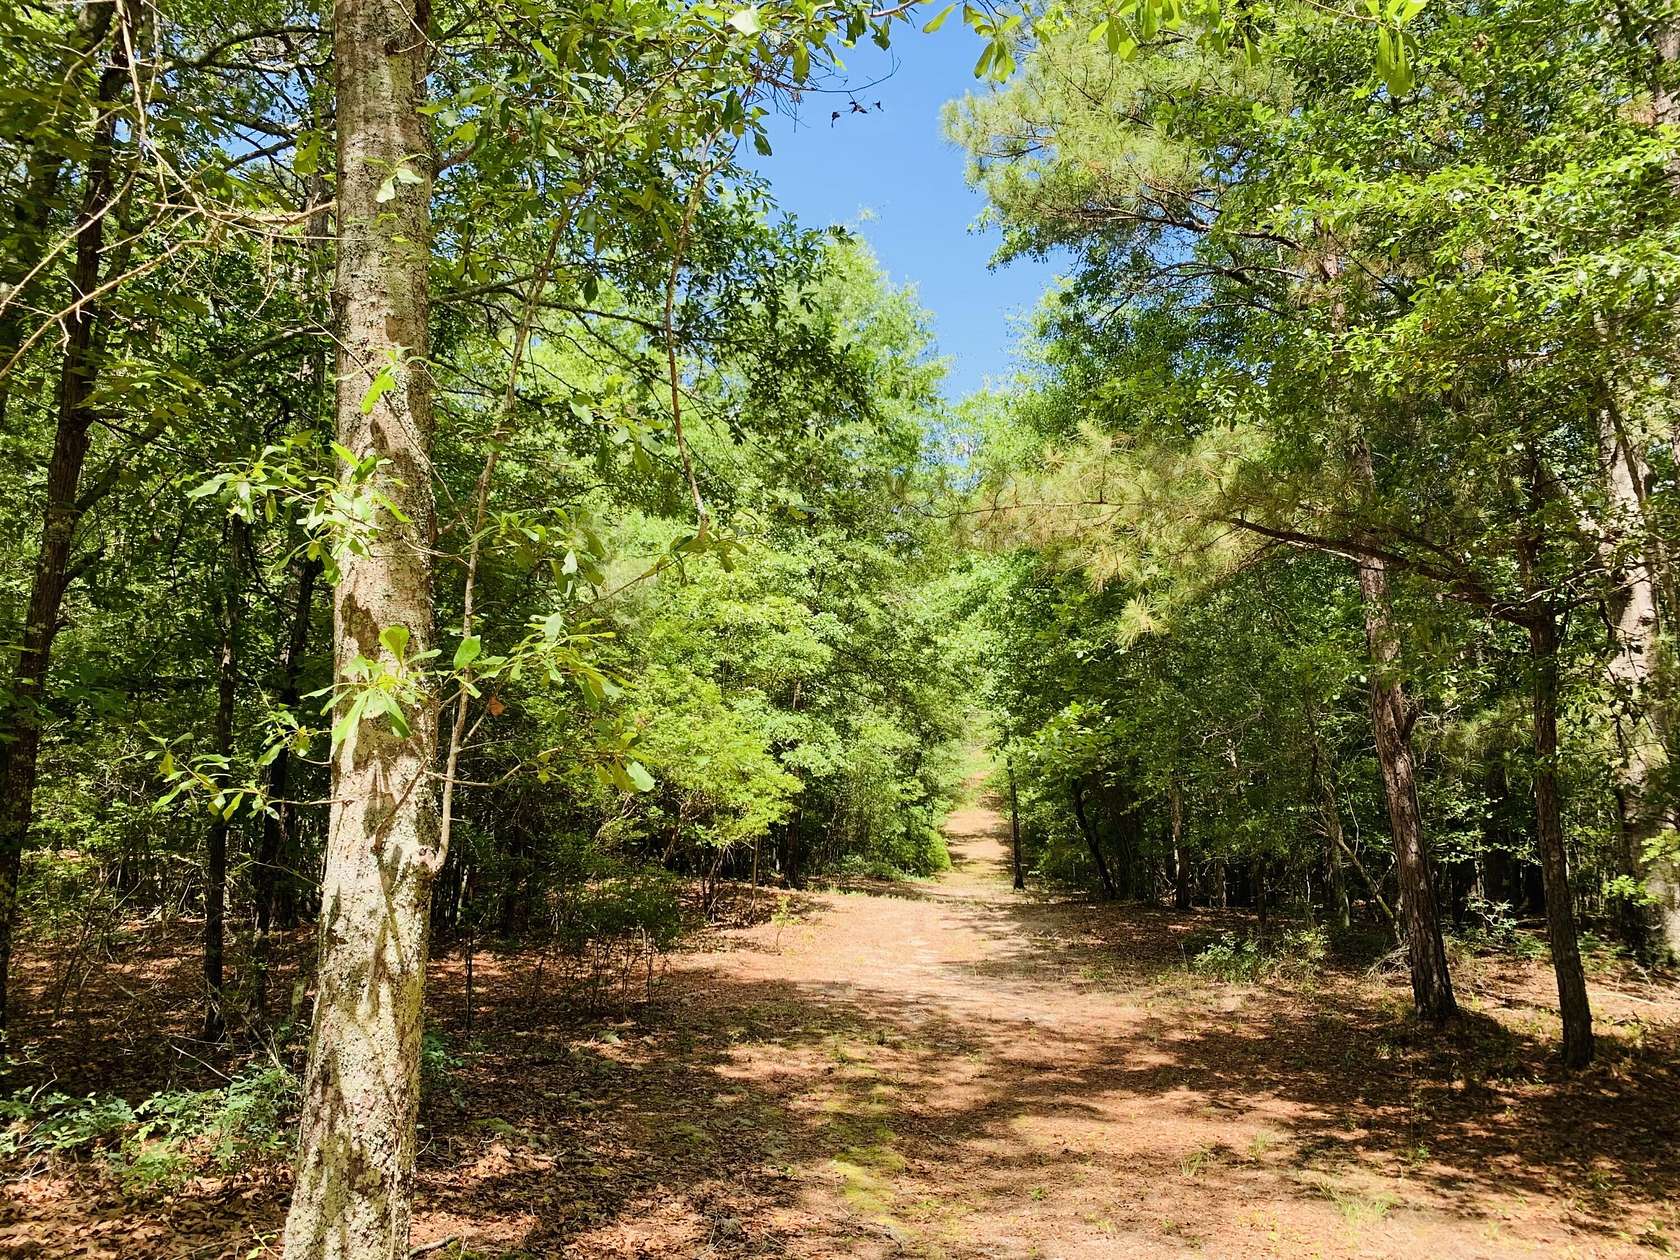 51.6 Acres of Land for Sale in Aiken, South Carolina